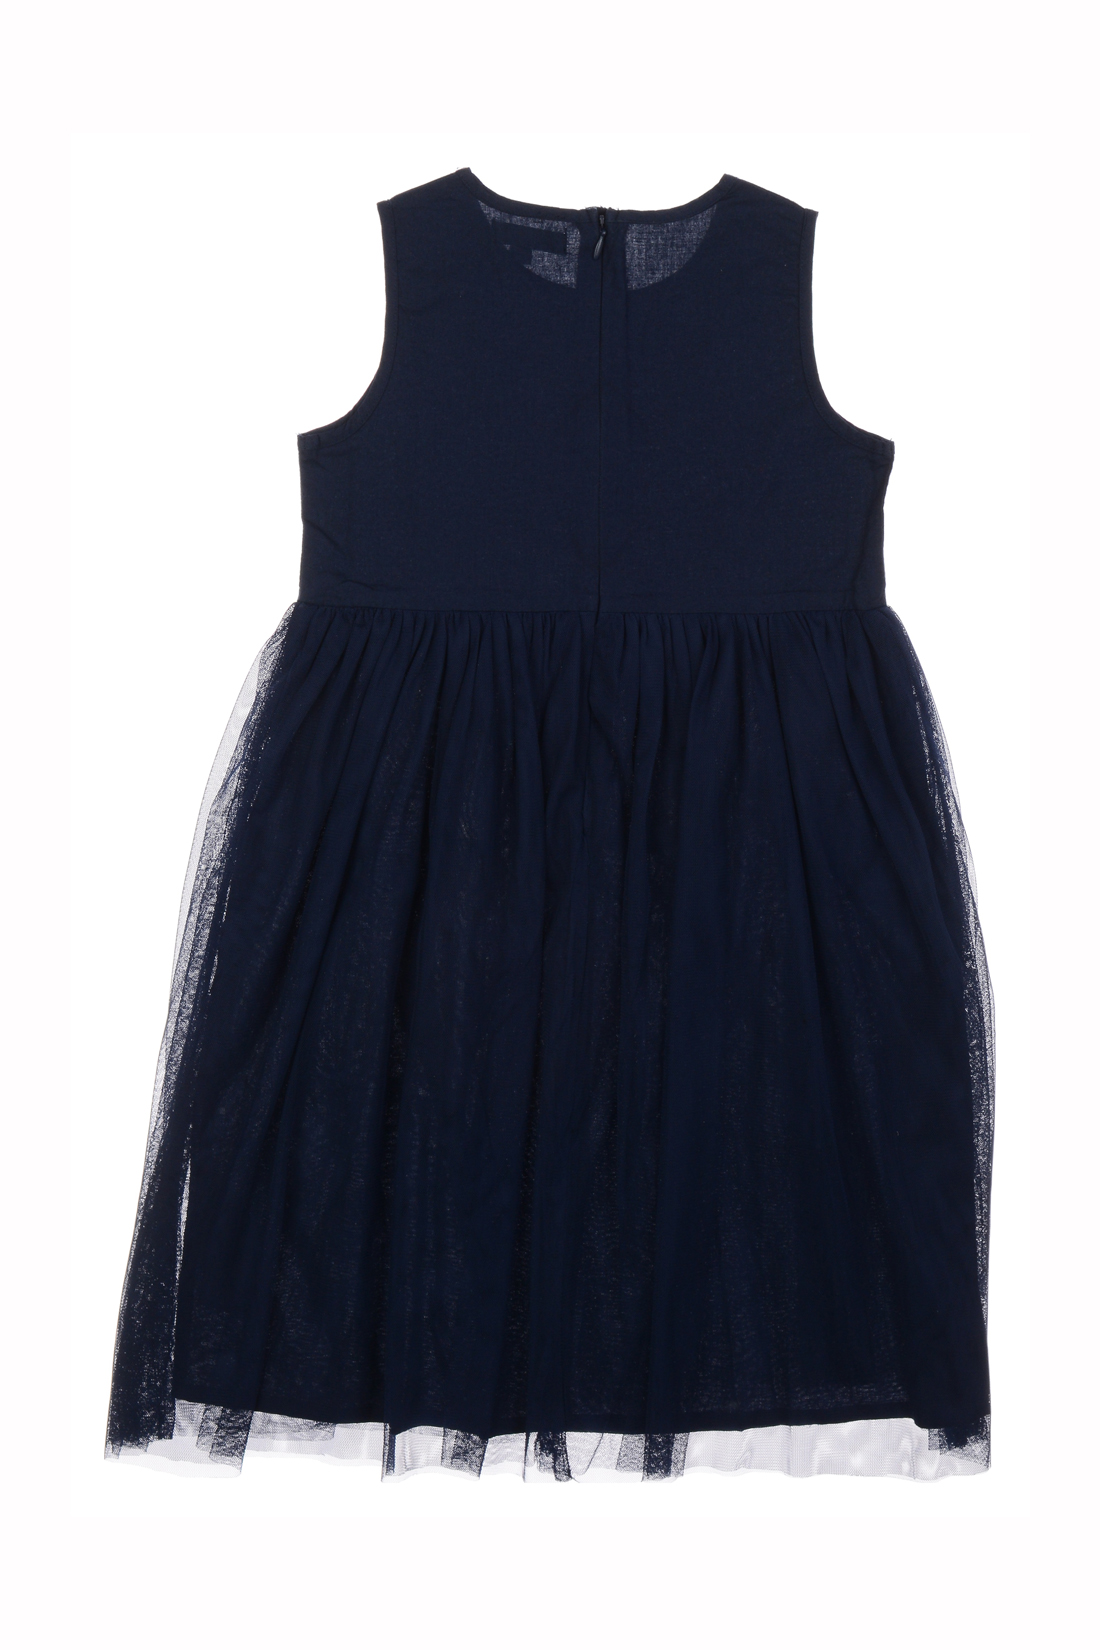 Платье для девочки (арт. baon BK459011), размер 122-128, цвет синий Платье для девочки (арт. baon BK459011) - фото 2